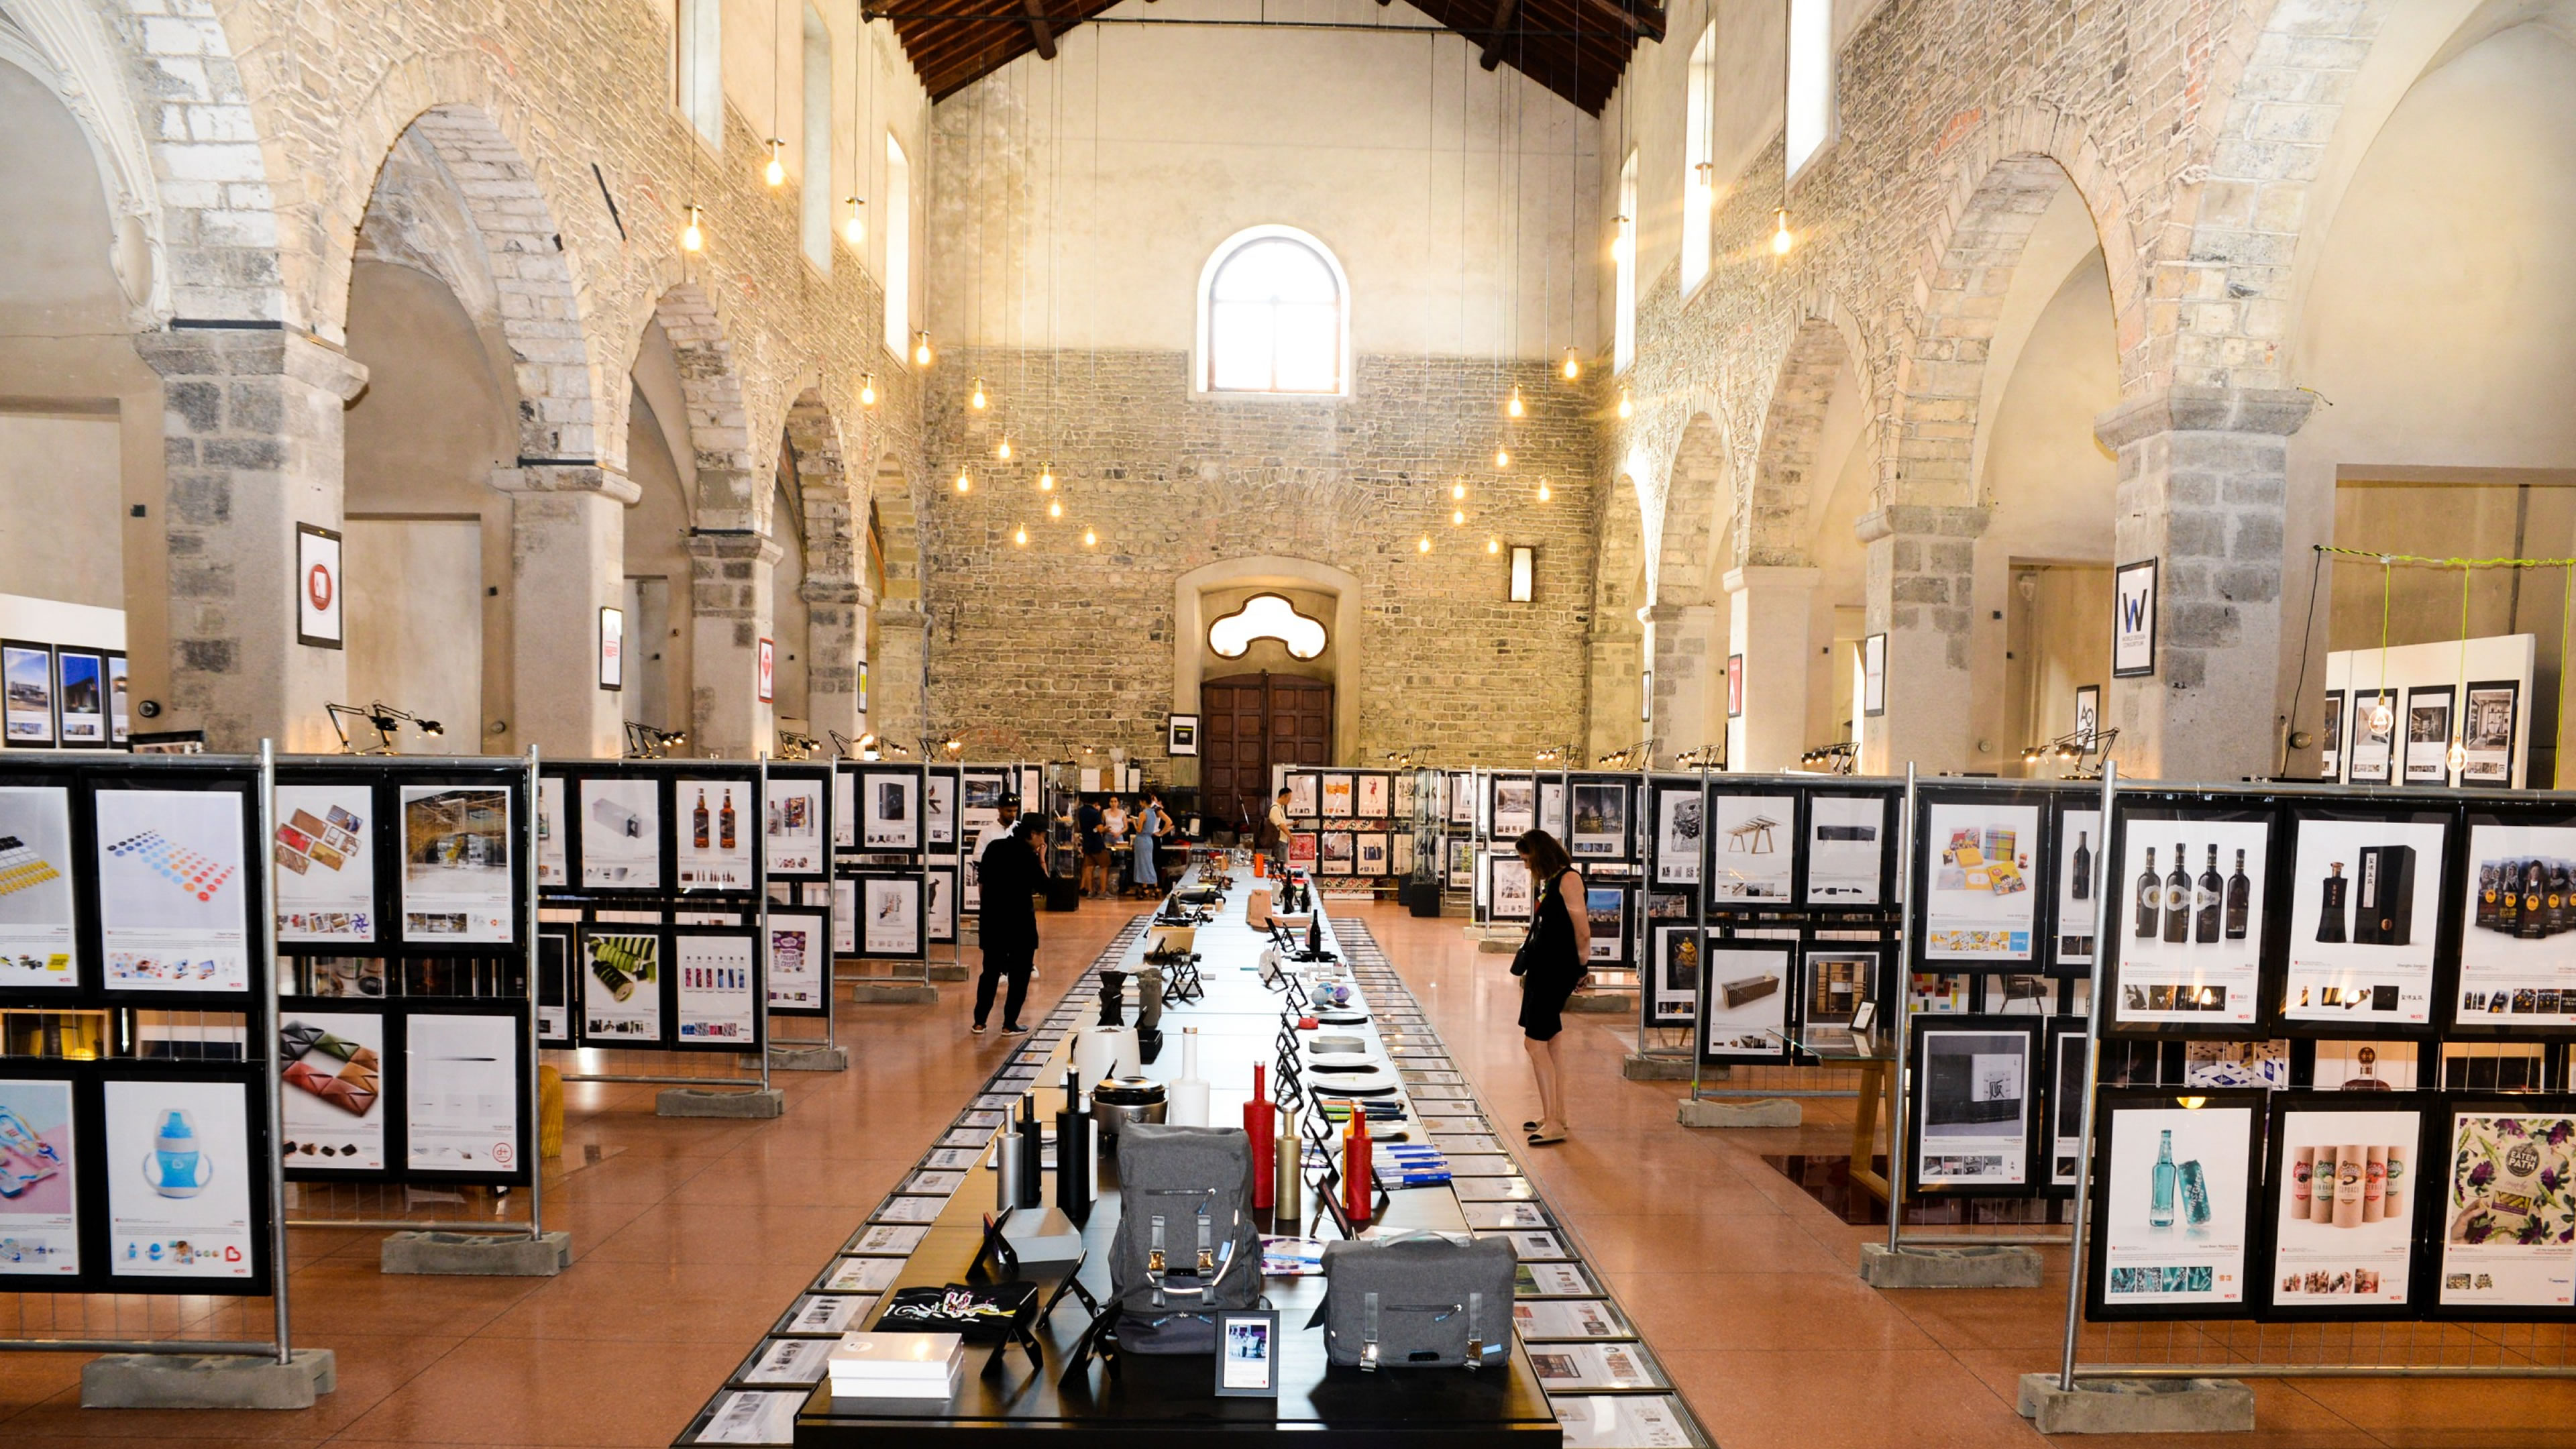 Design Award Exhibition Space